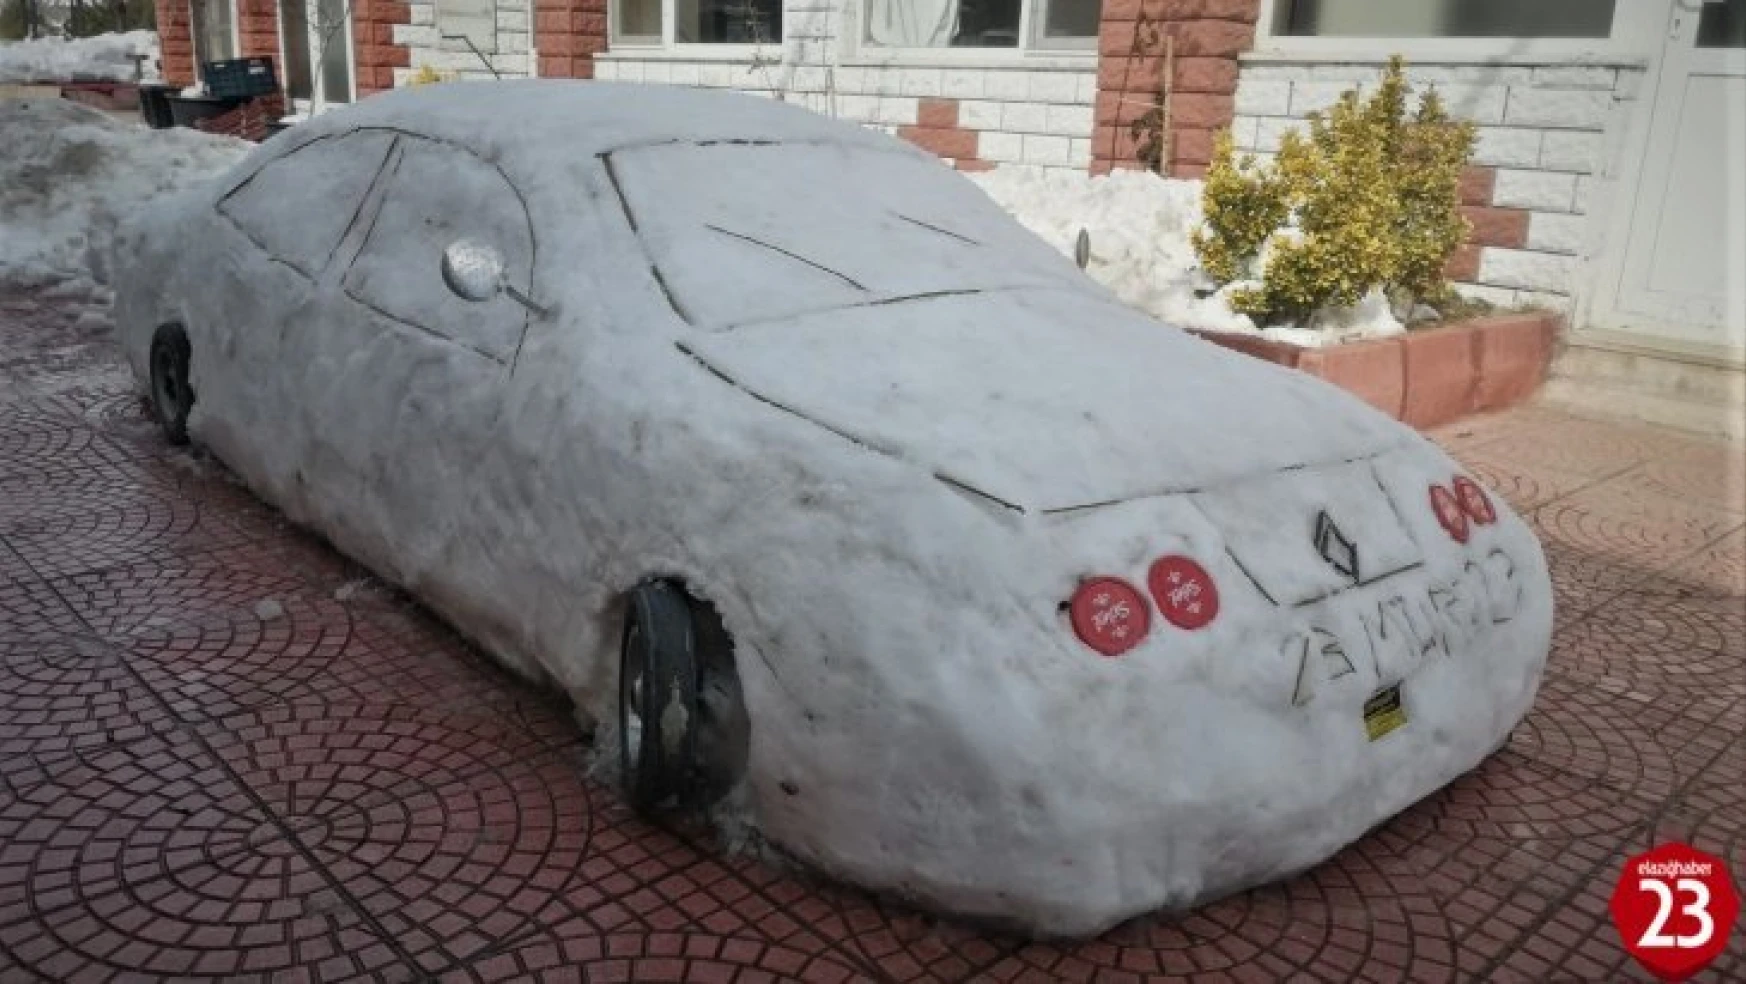 Elazığ'da Olmaz Demeyin Oldu Bile, Kardan Yaptığı Arabasına 200 Bin Lira Fiyat Biçti